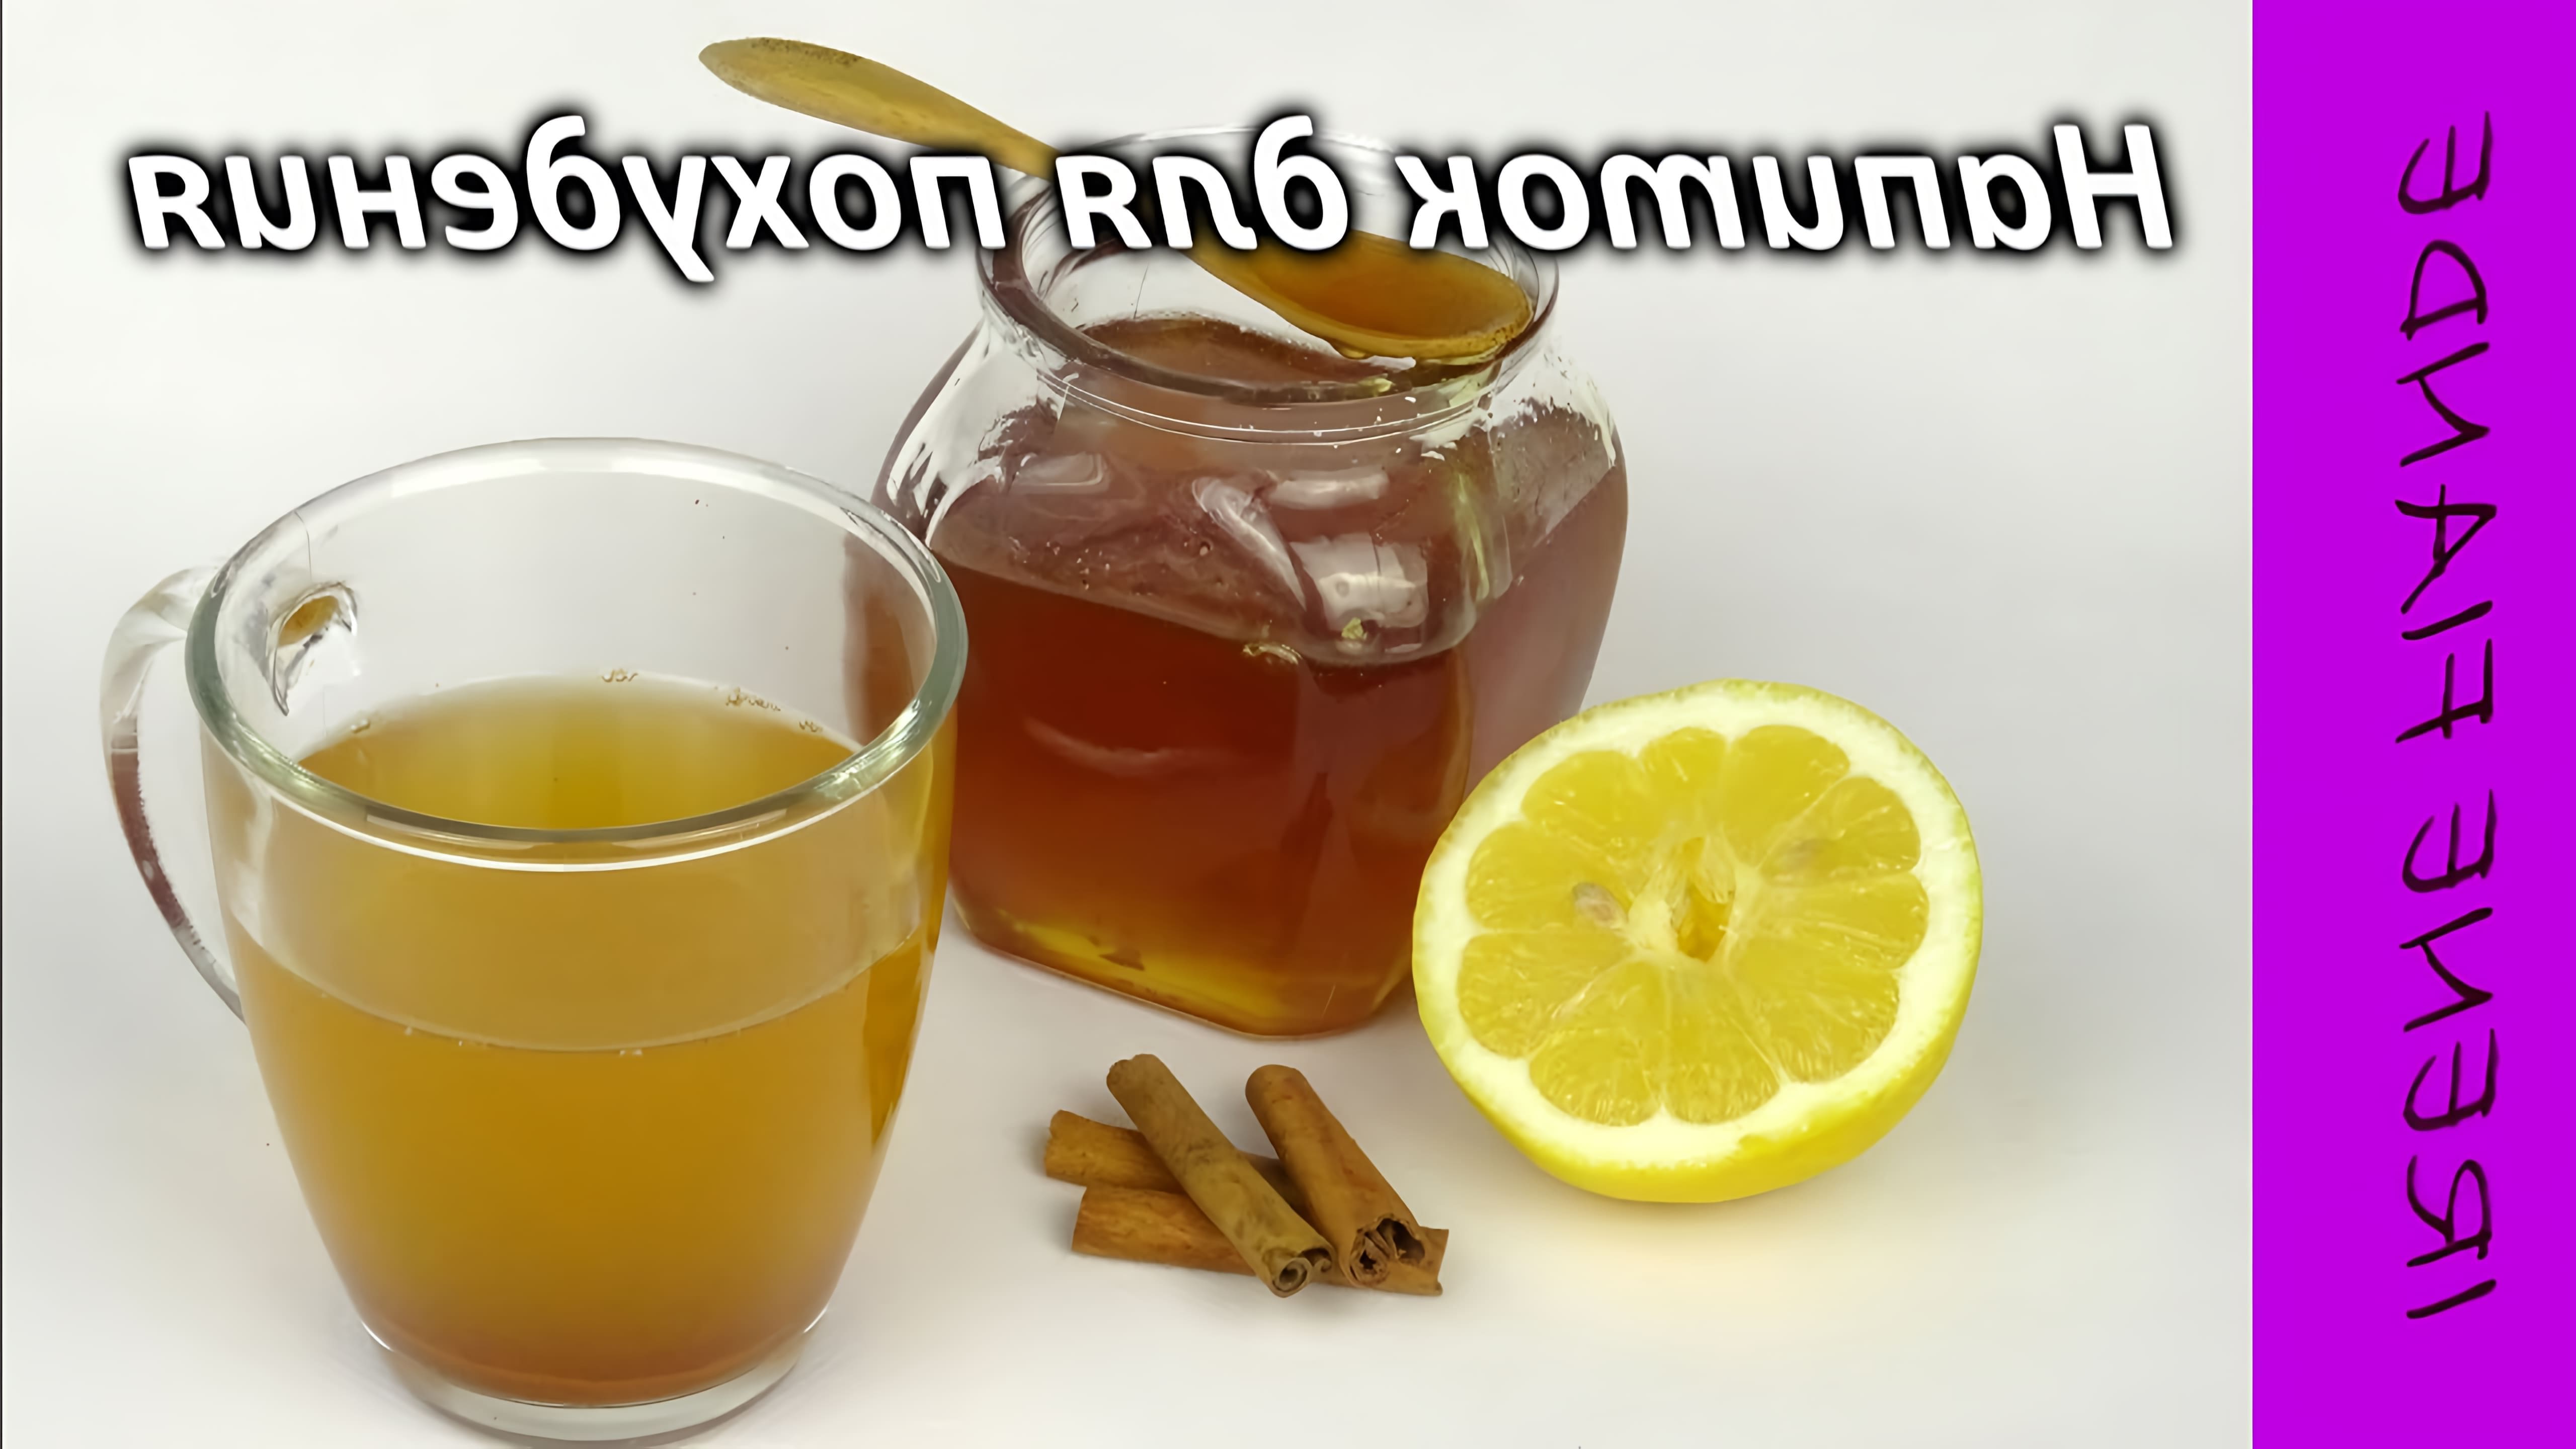 В этом видео Ирина рассказывает о простом рецепте напитка для похудения, который можно приготовить из мёда, корицы и лимона